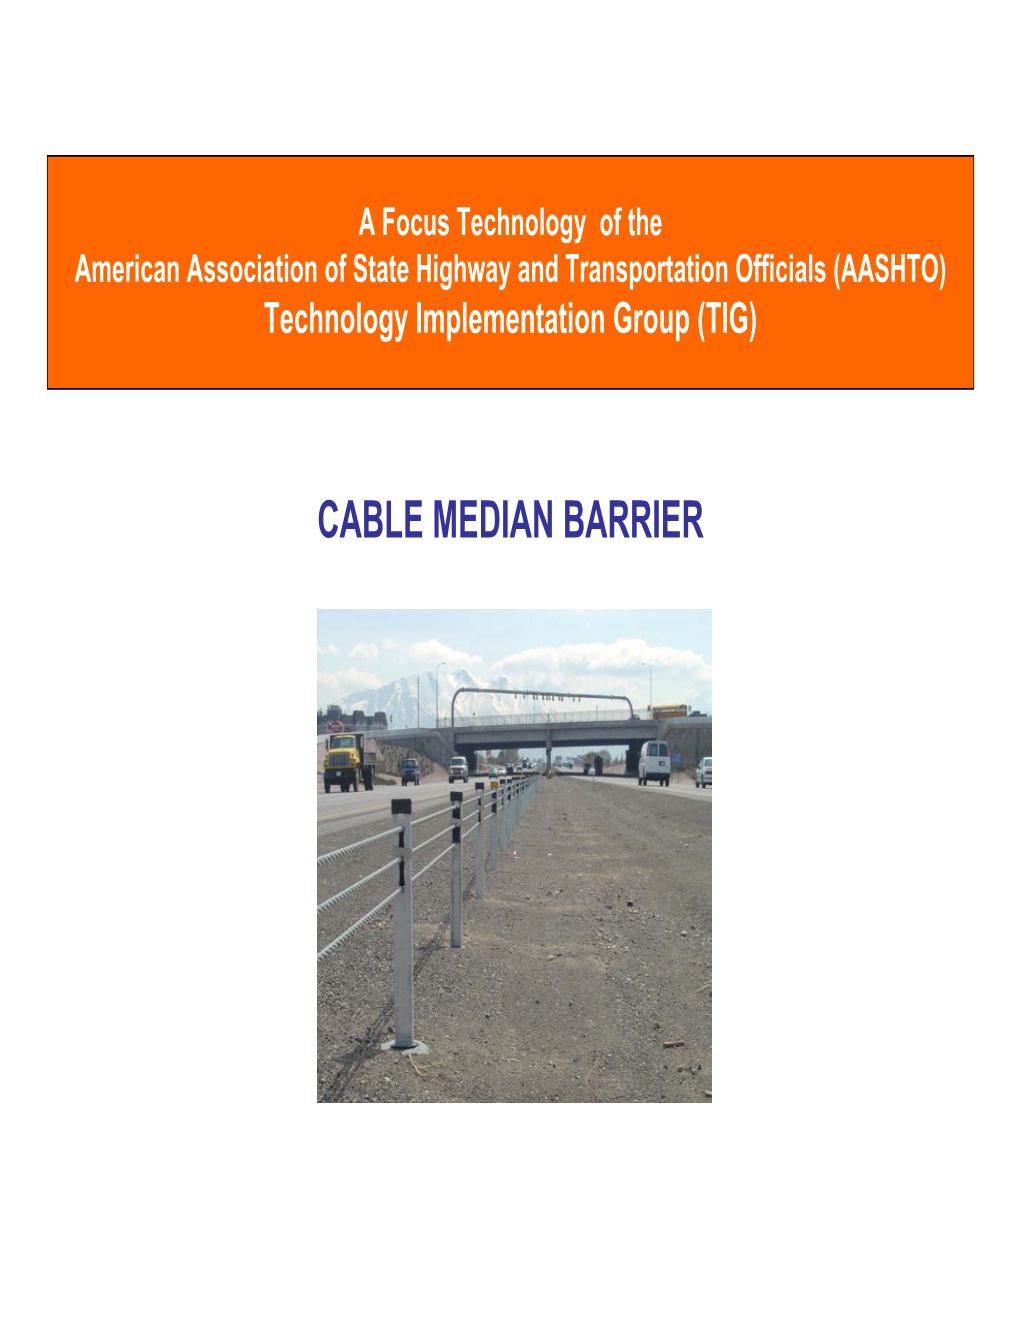 CABLE MEDIAN BARRIER Cable Median Barrier